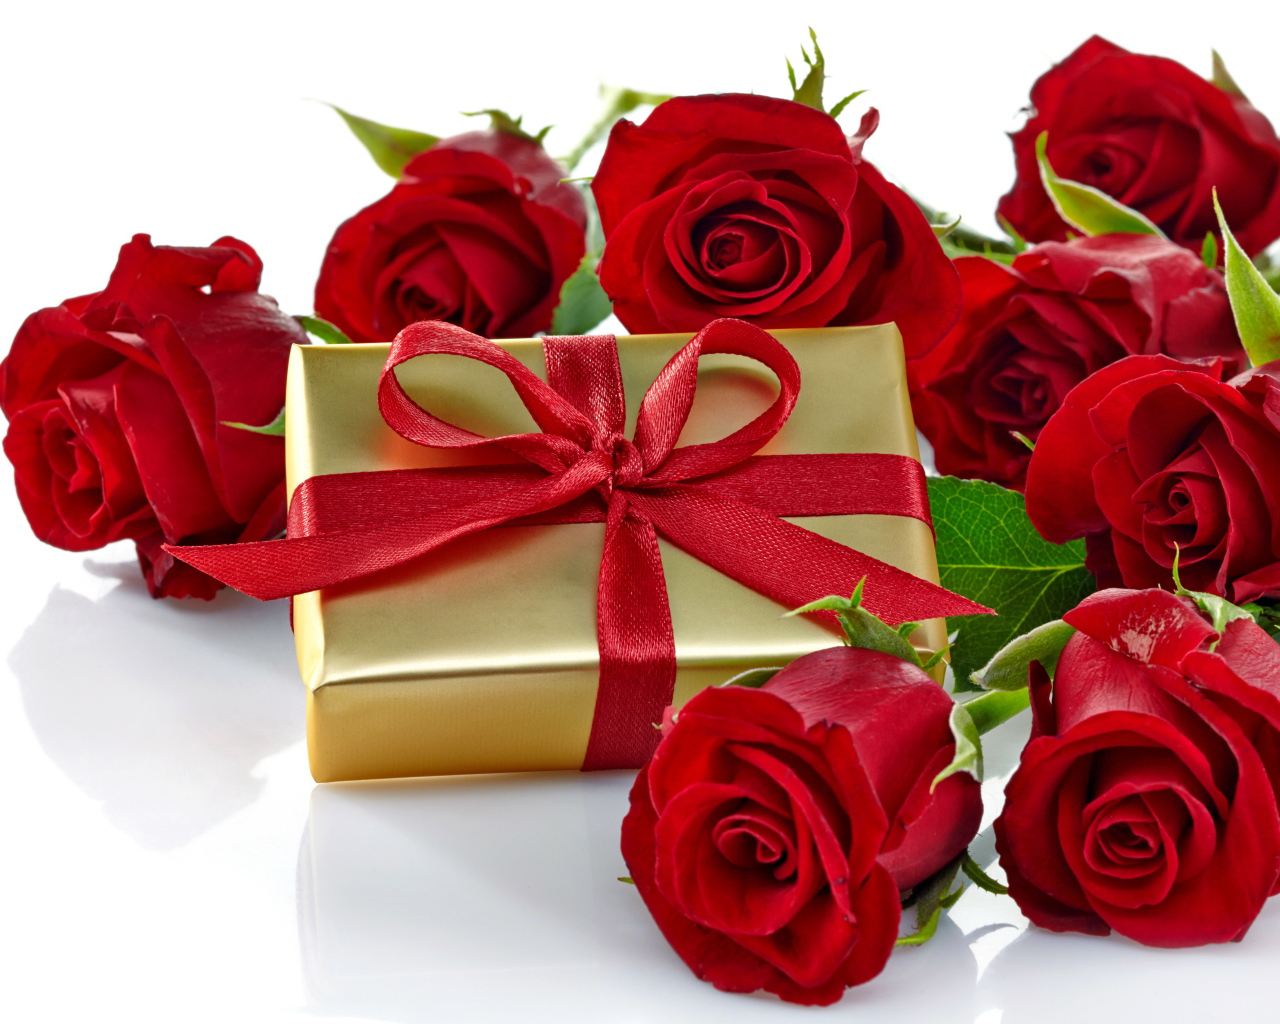 Подарок и букет красных роз на белом фоне к празднику 8 марта